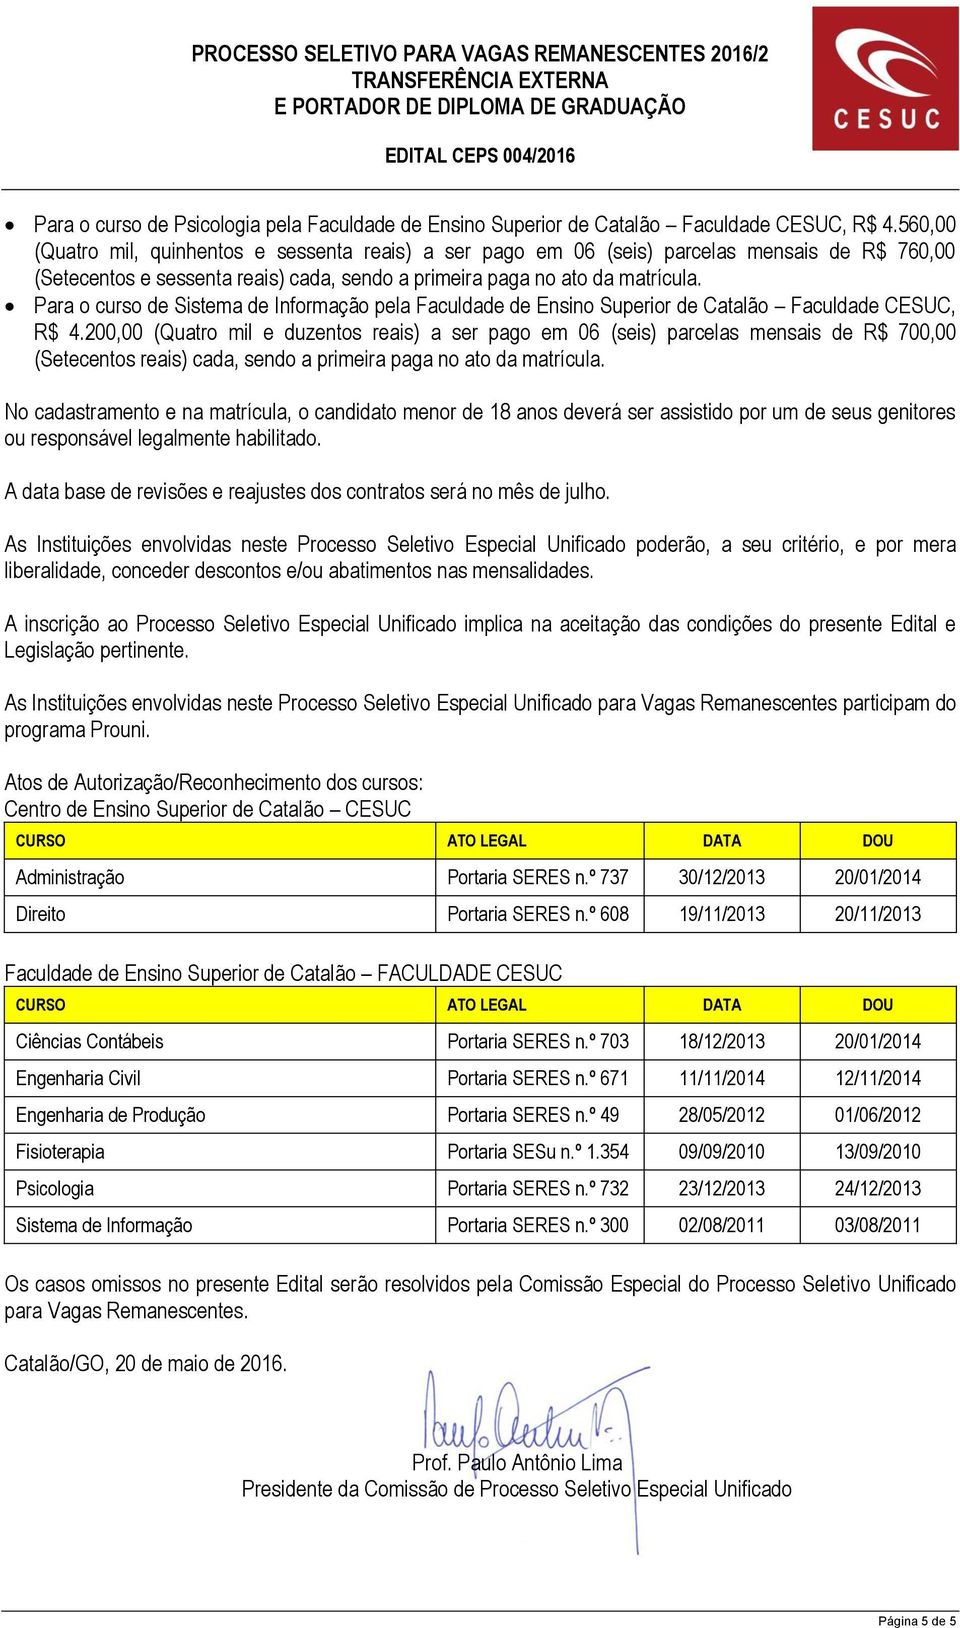 Para o curso de Sistema de Informação pela Faculdade de Ensino Superior de Catalão Faculdade CESUC, R$ 4.